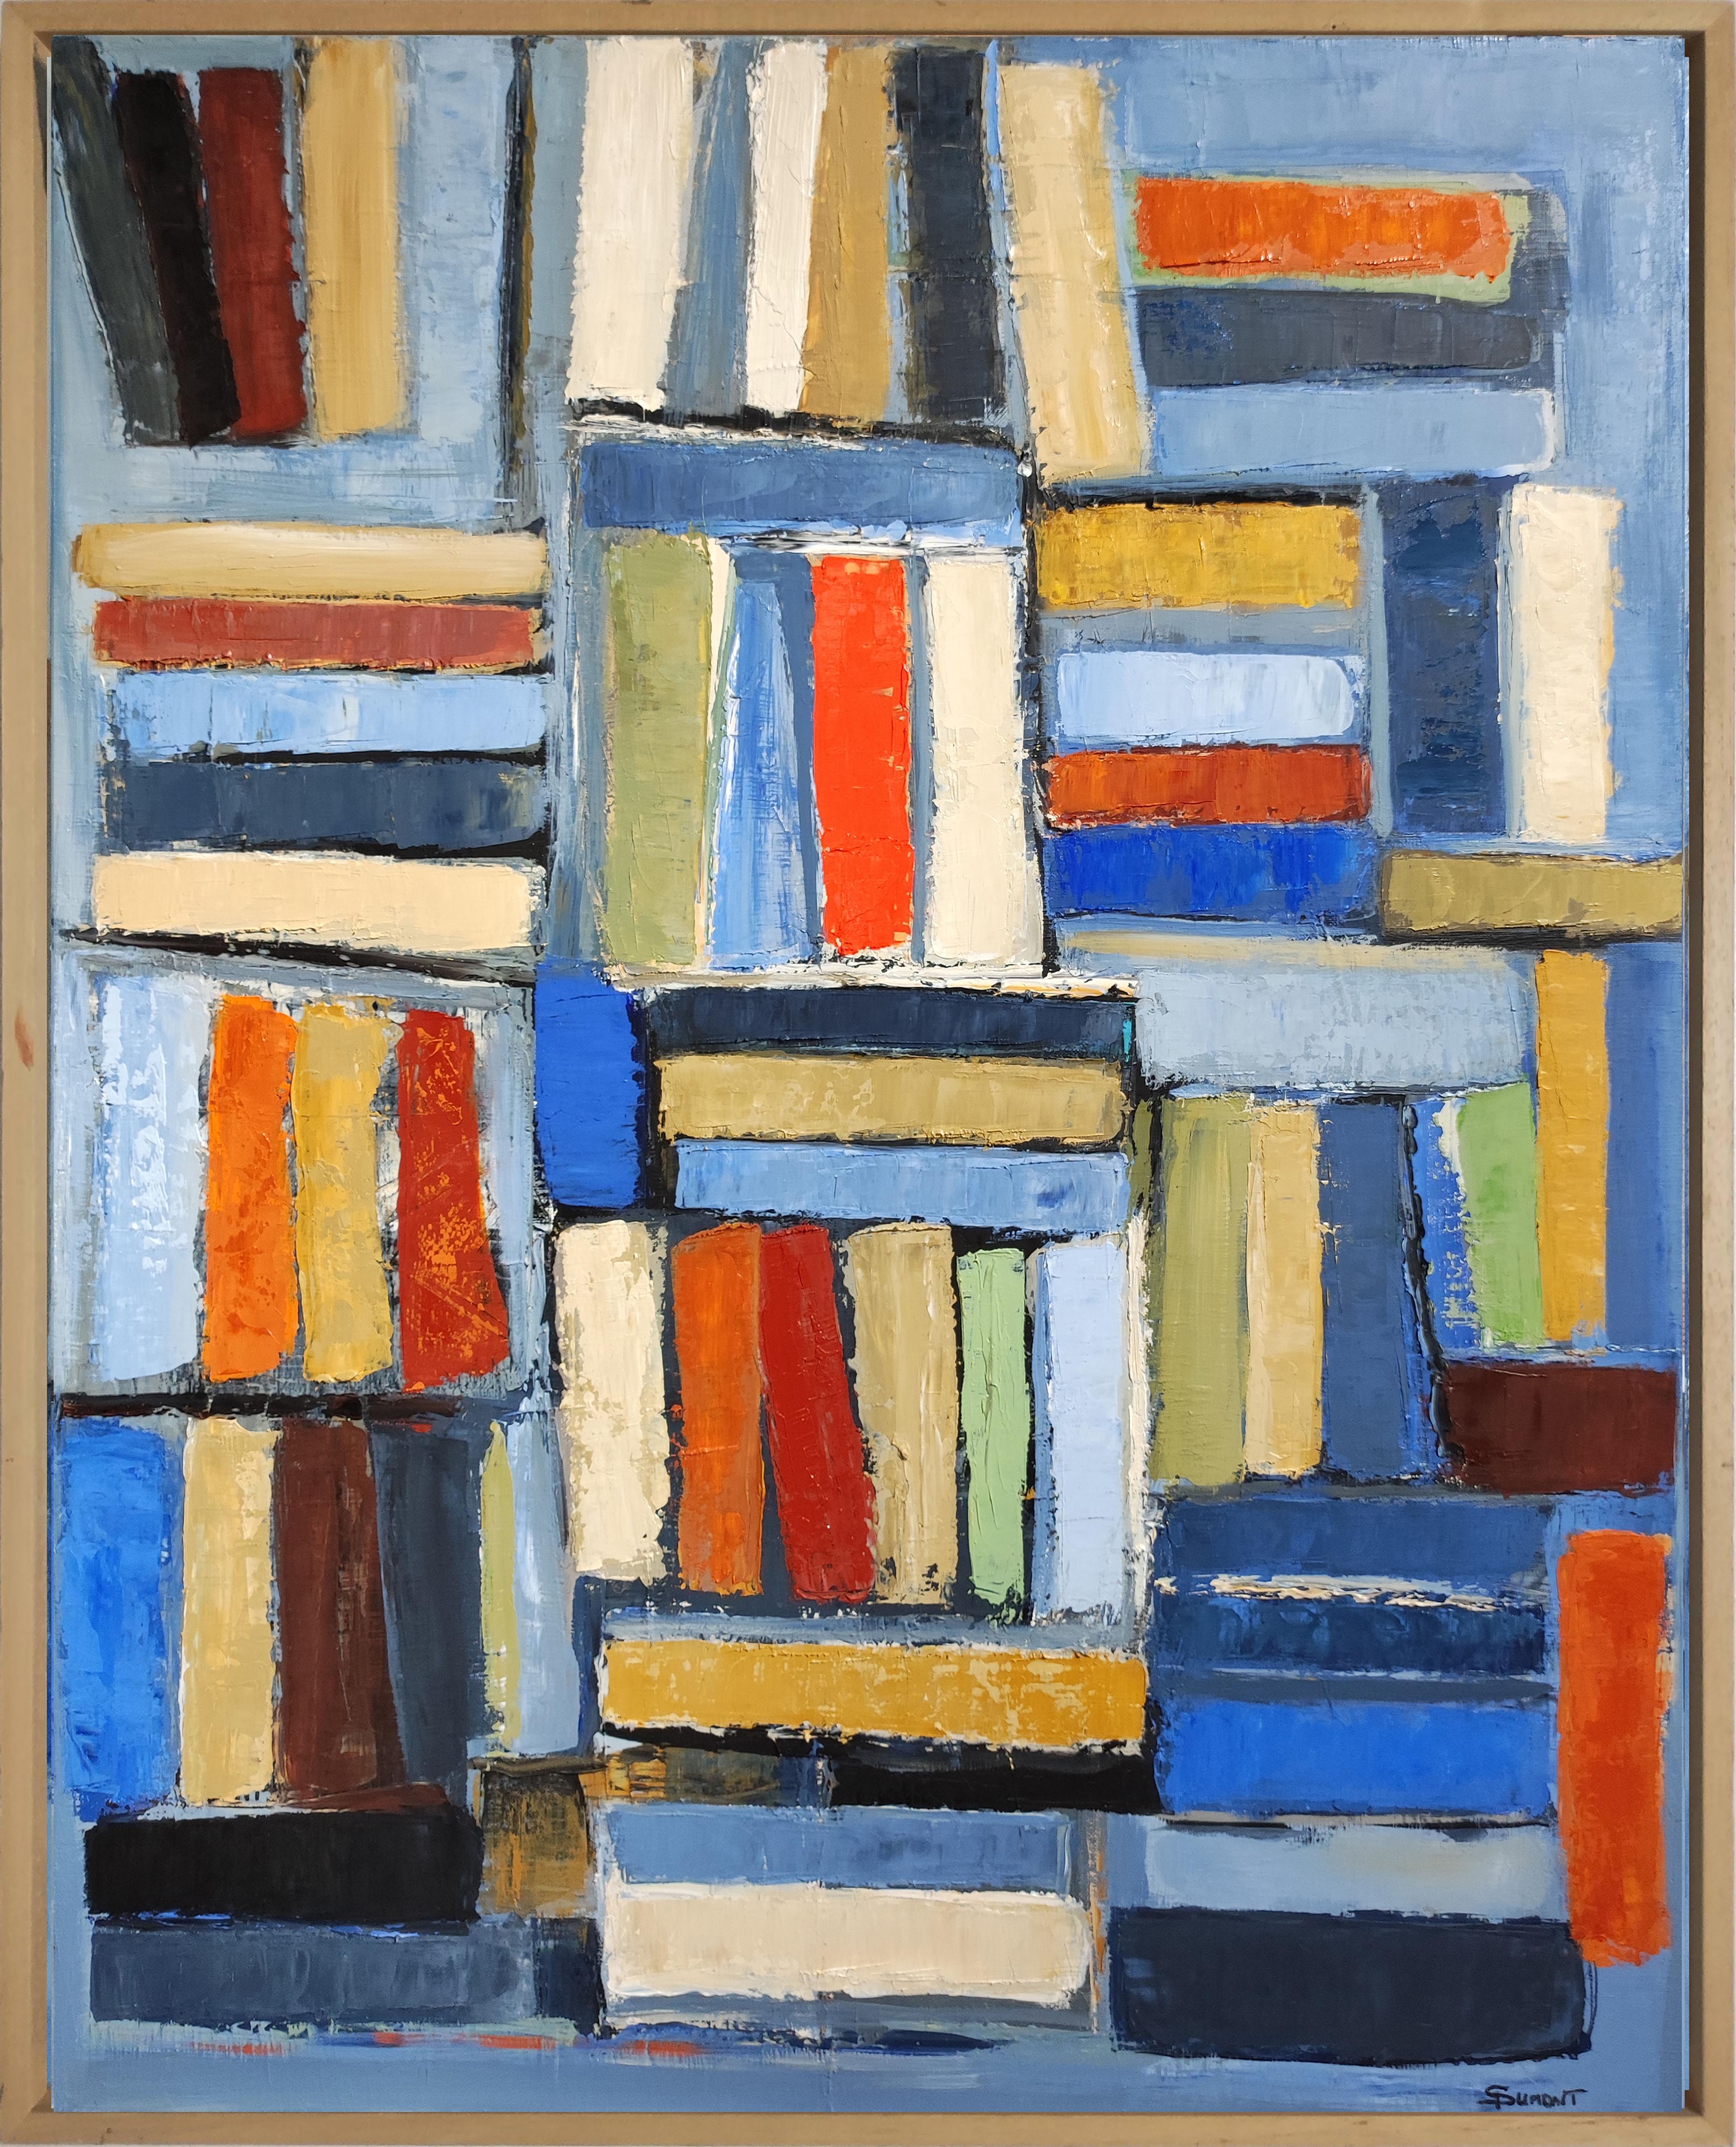 Bibliothek 2, farbige Bücher in Bibliothek, abstrakt, Expressionismus, Öl auf Leinwand – Painting von SOPHIE DUMONT